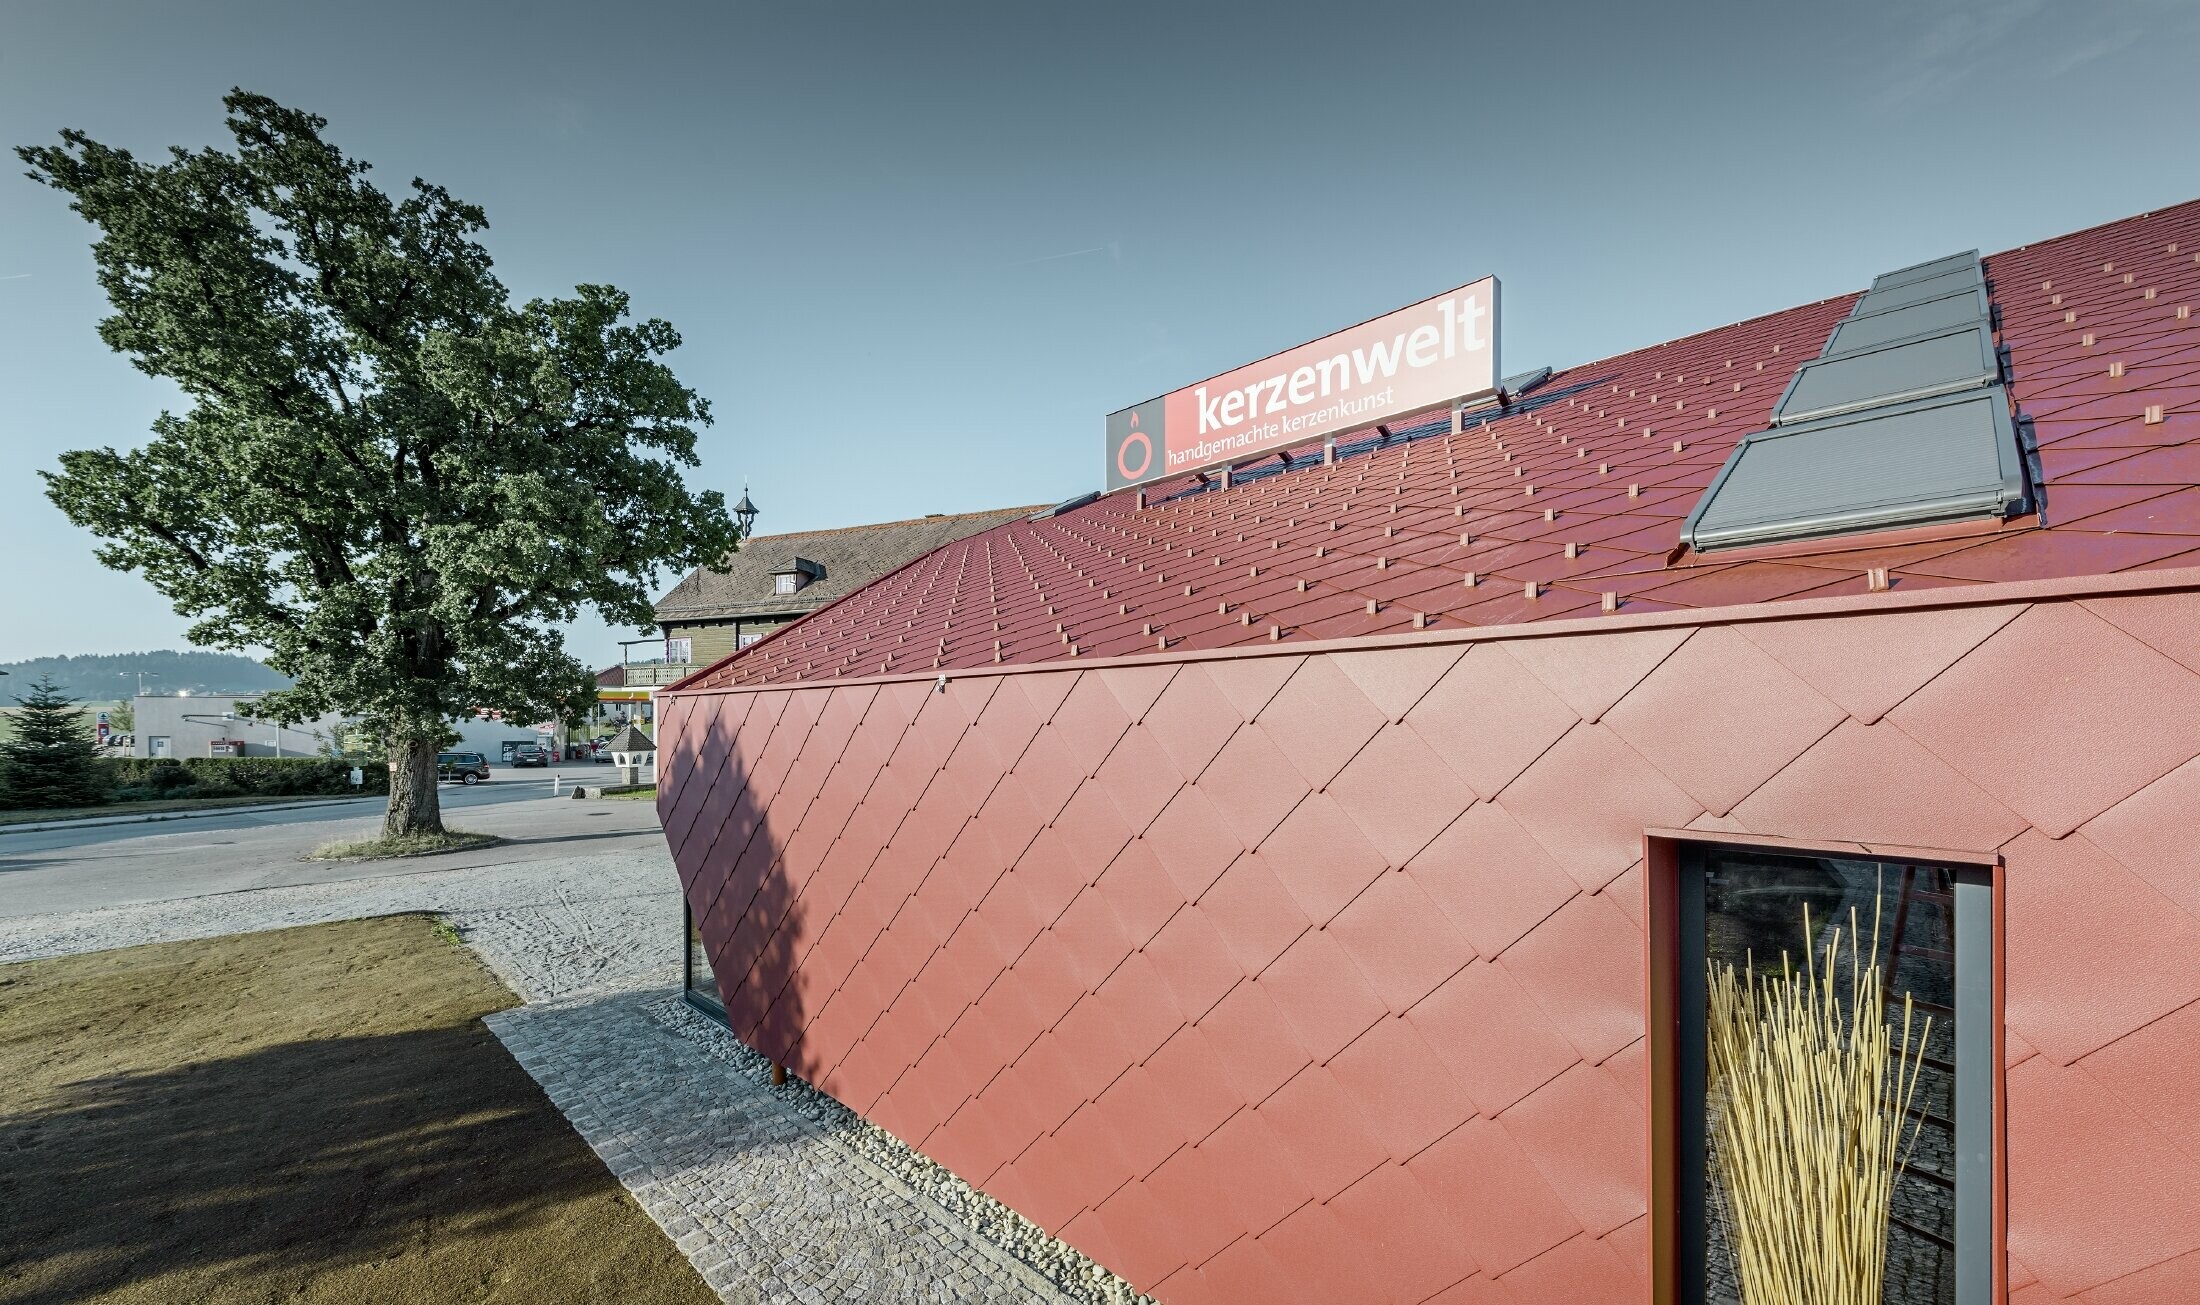 Kerzenwelt i Schlägl täcktes helt med romber från PREFA. Tak och fasadbeklädnad utfördes med romber 44 × 44 i oxidrött.